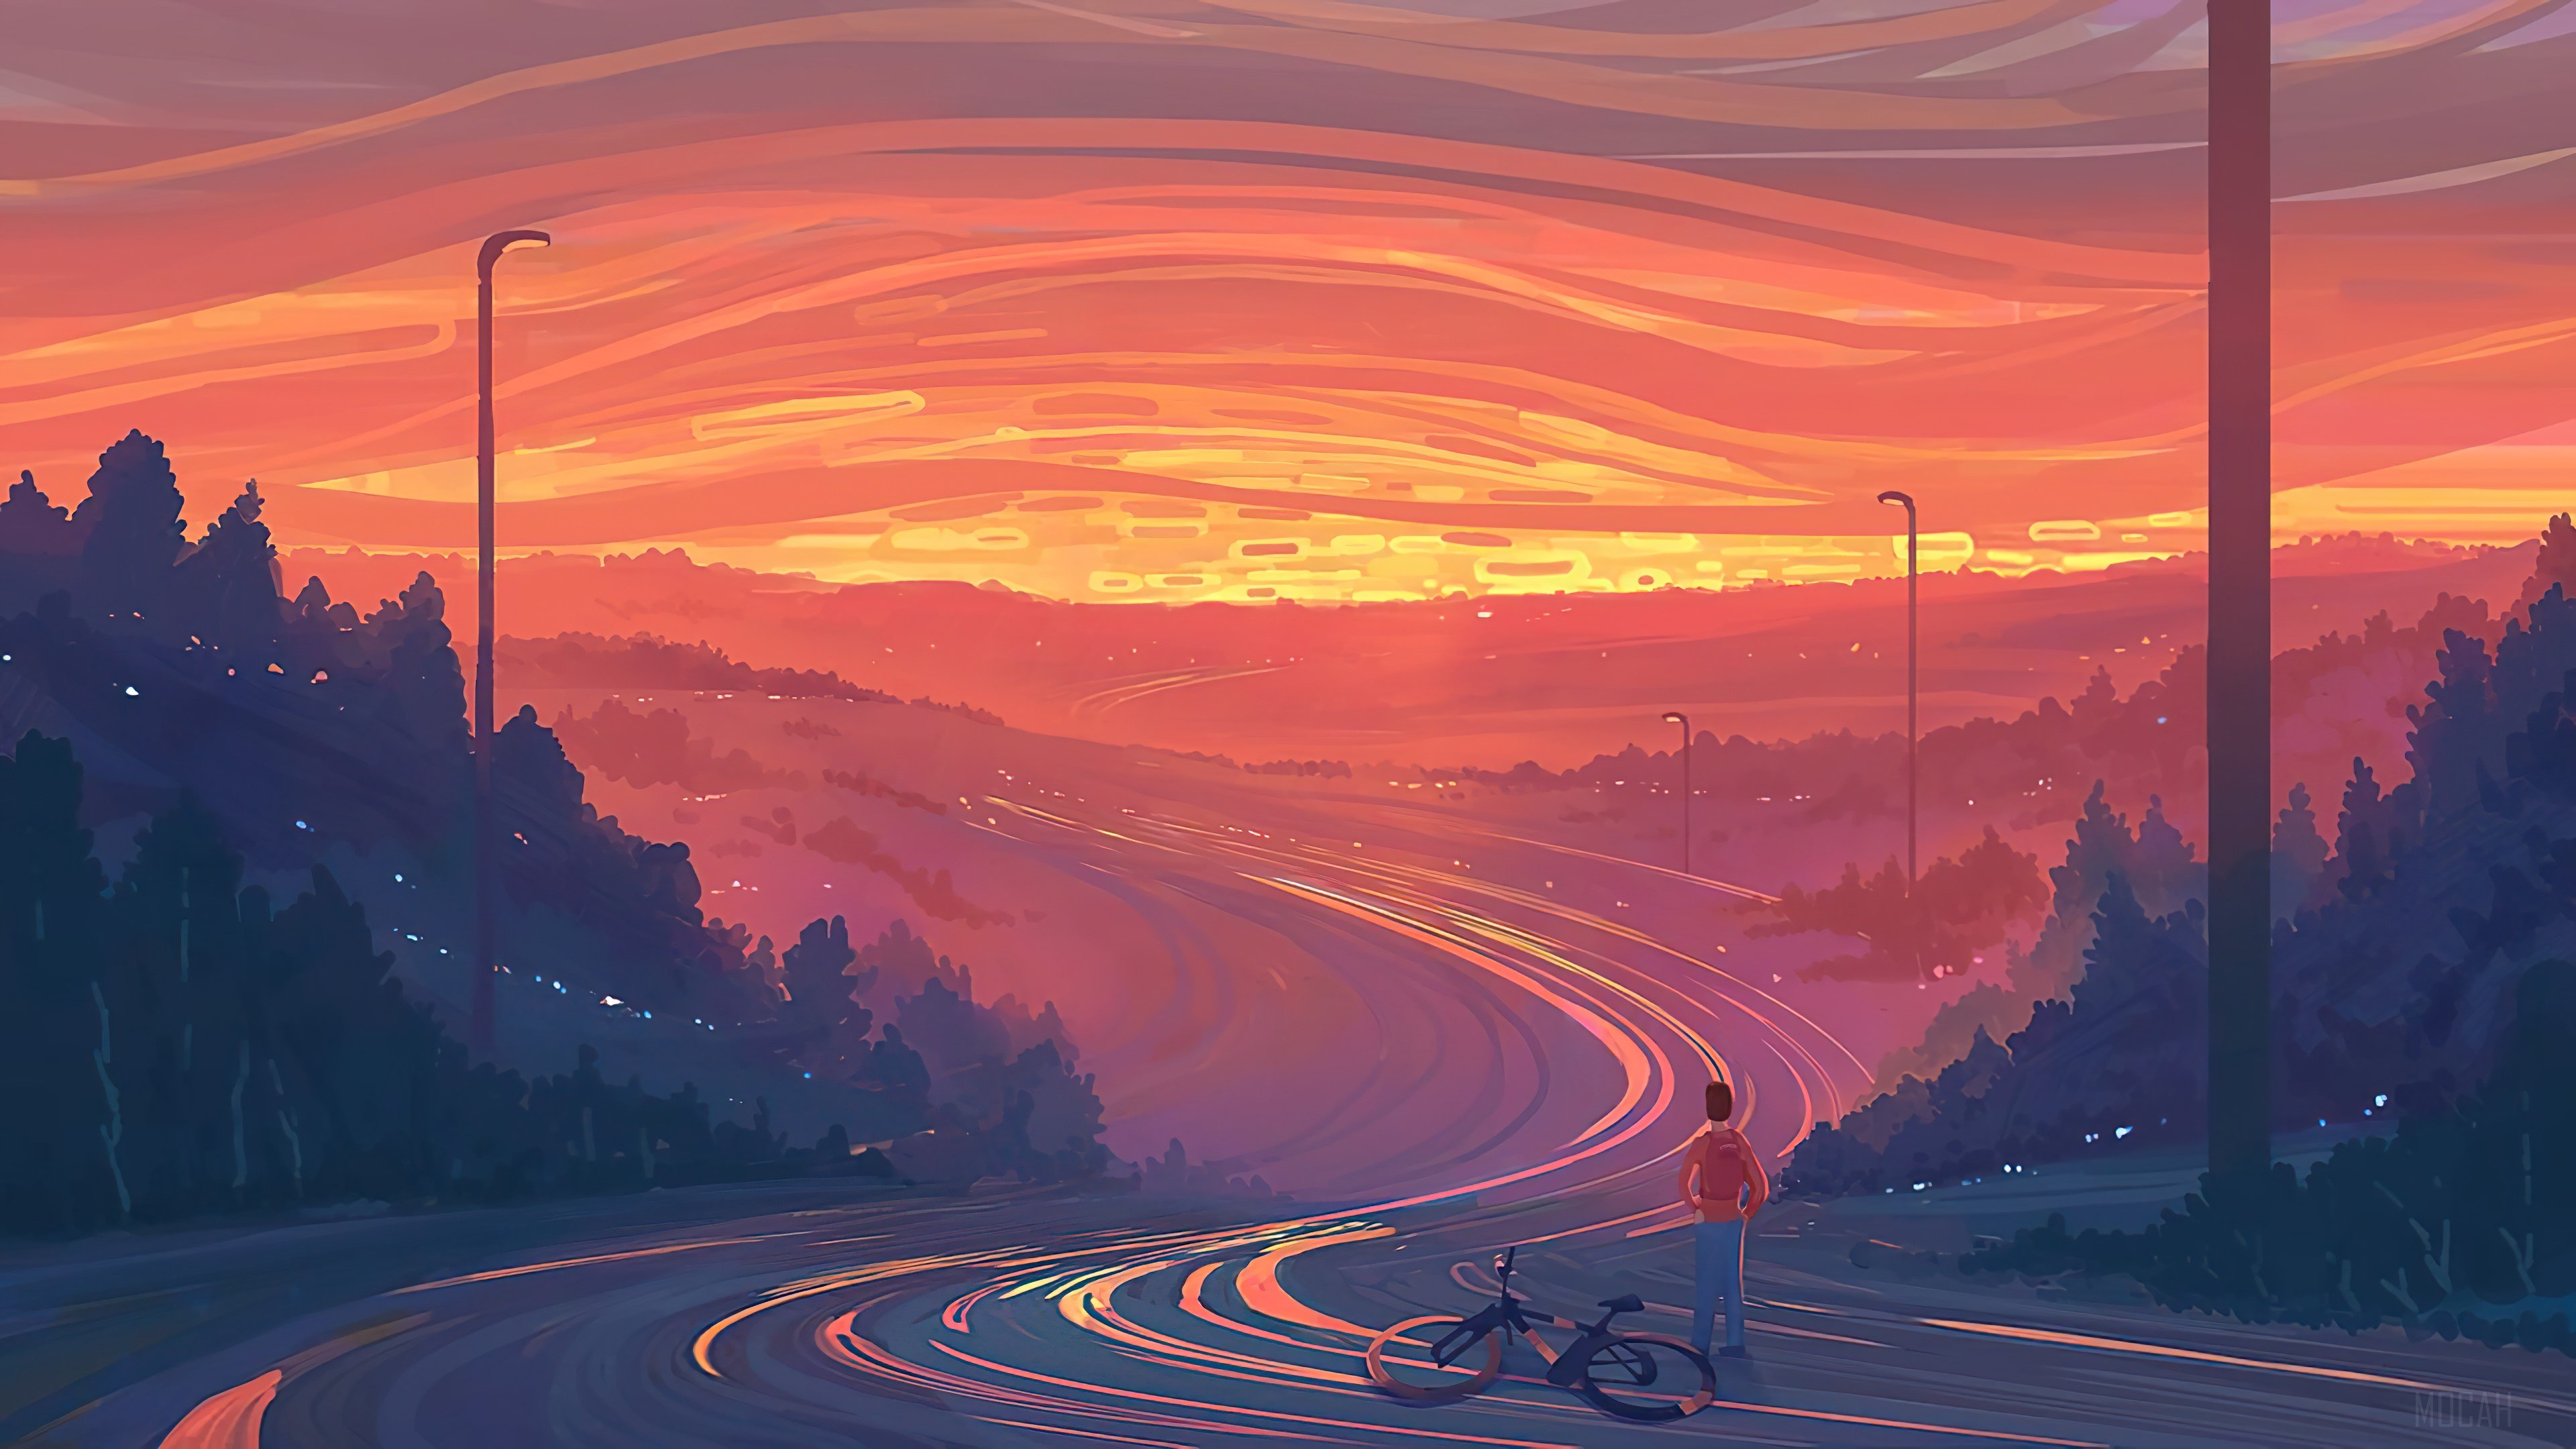 Digital Art, Sunset, Scenery, Landscape 4k Gallery HD Wallpaper